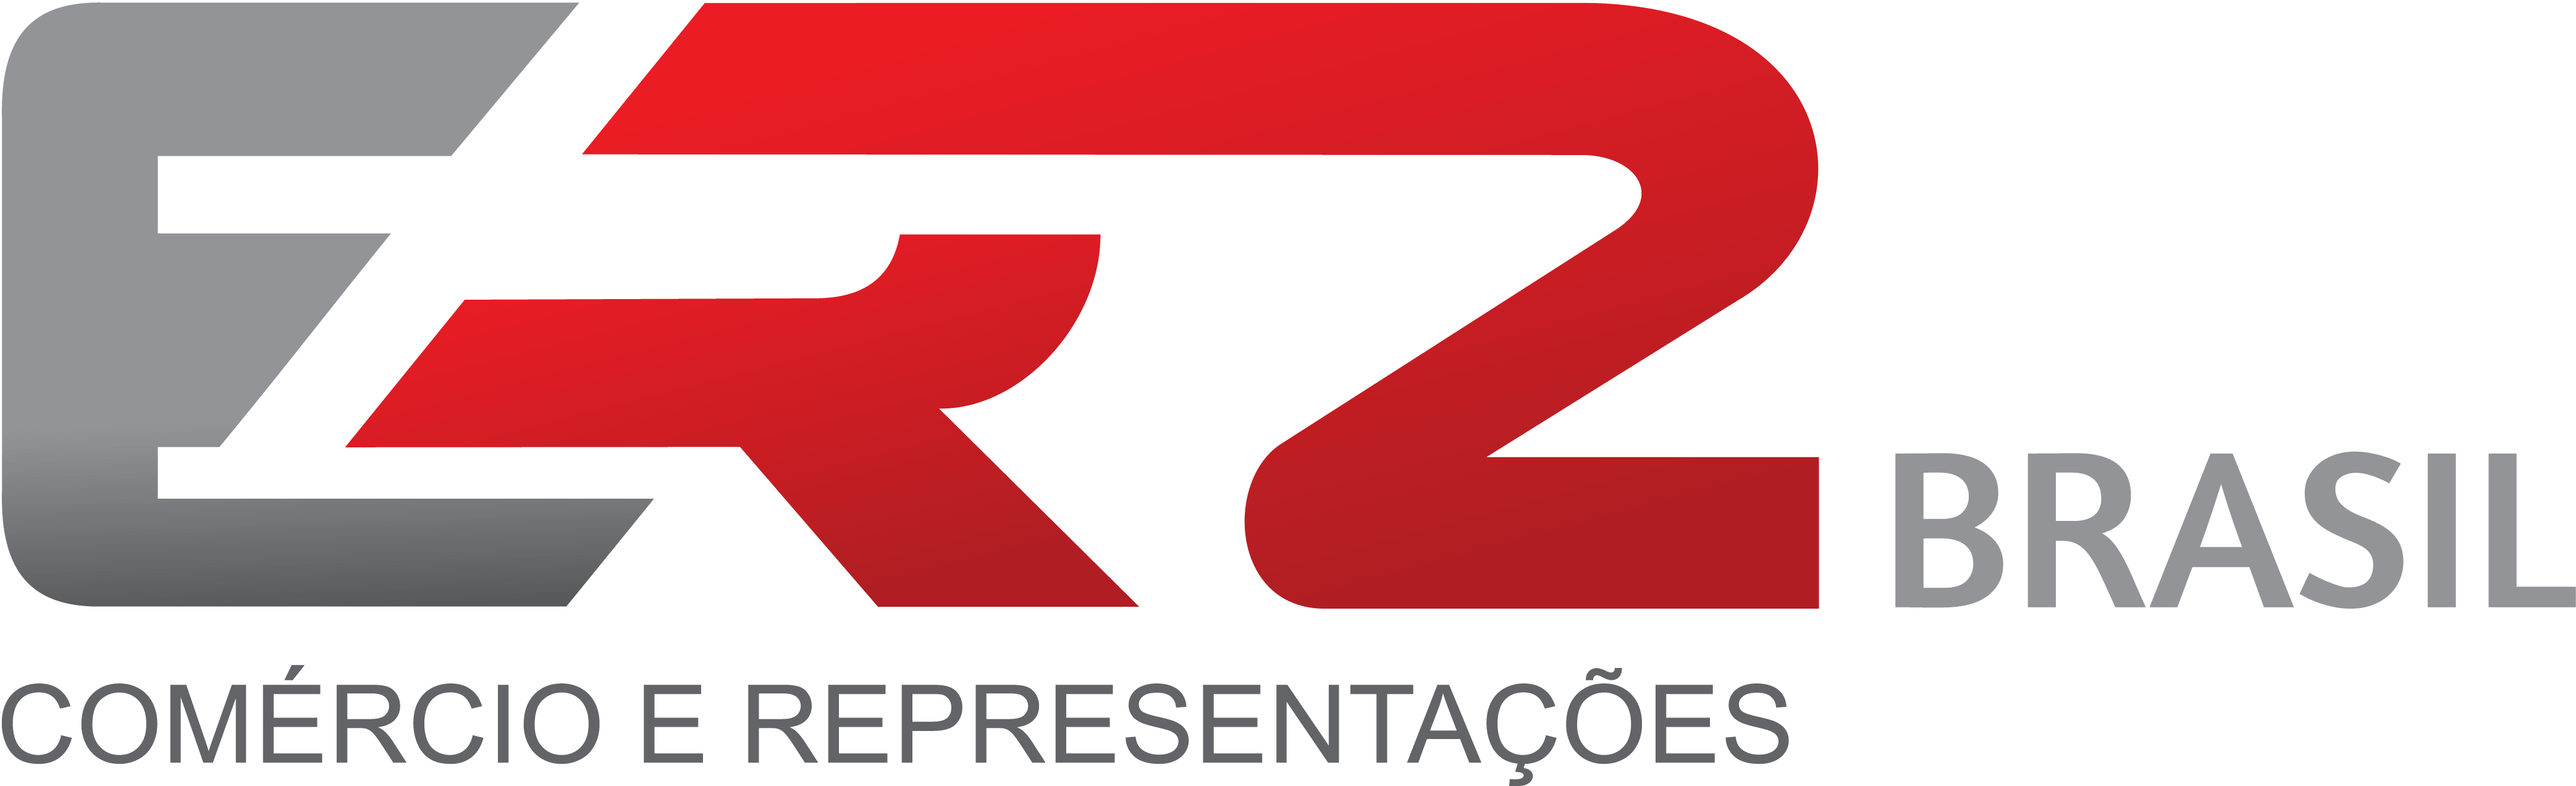 Logo ER2 BRASIL